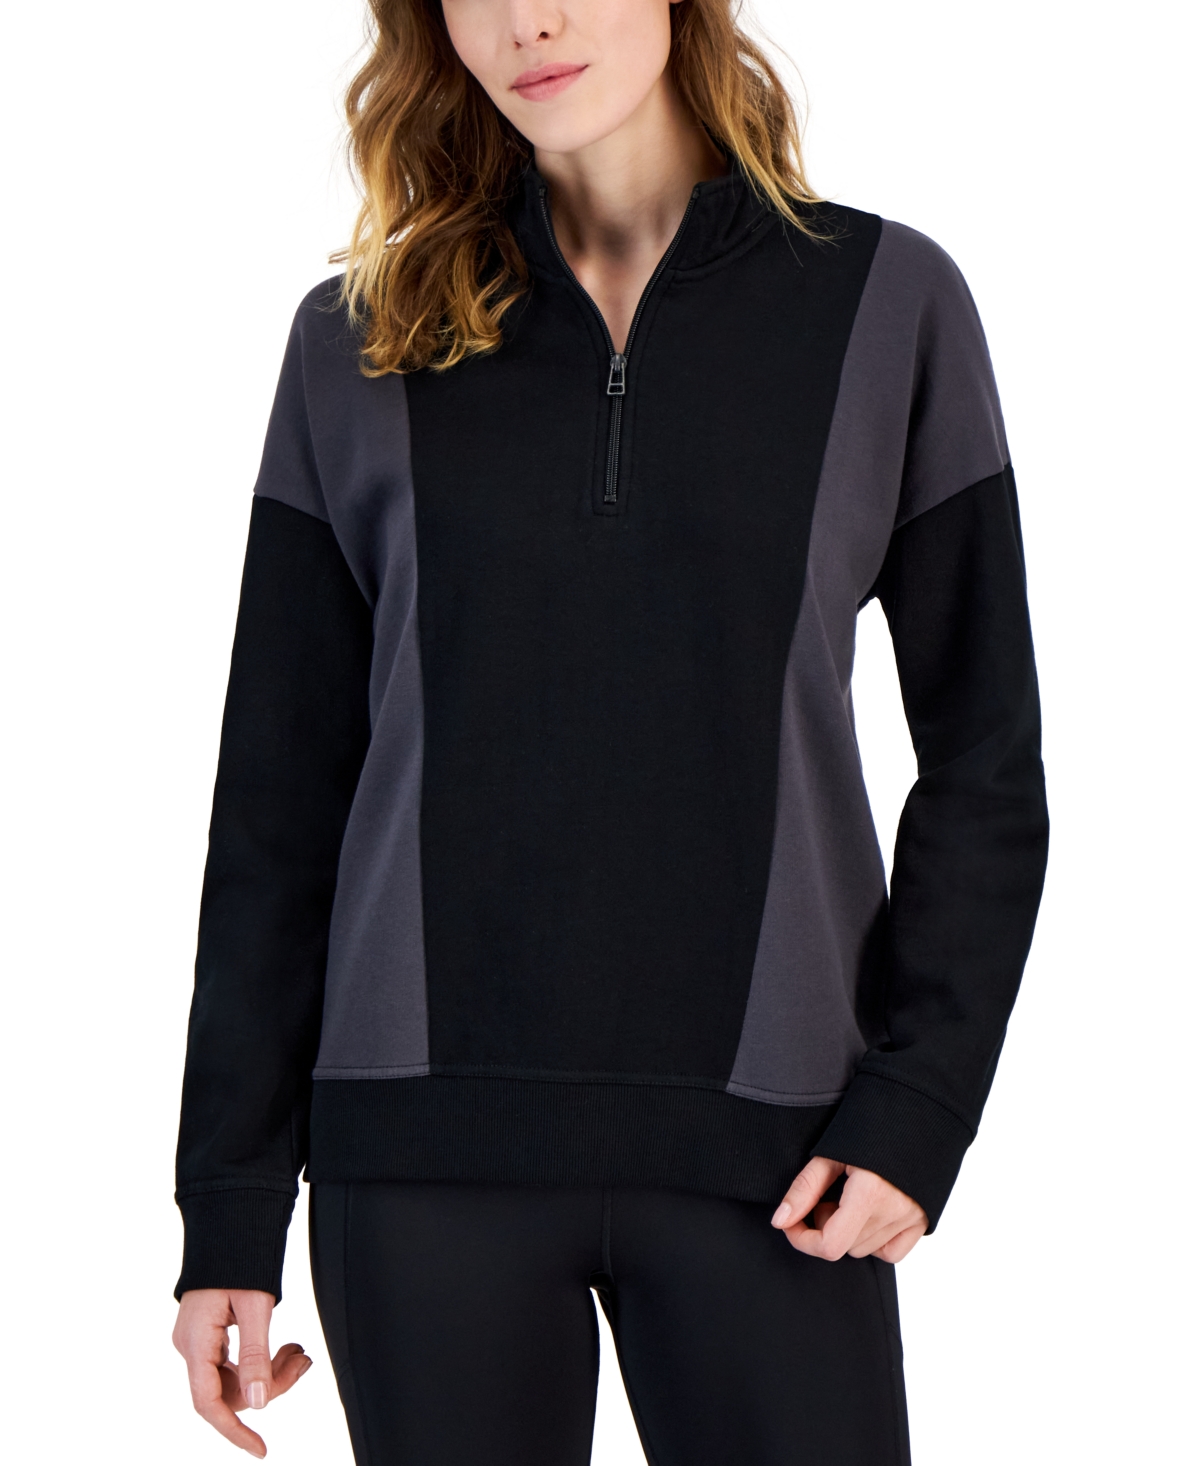 Women's Colorblocked Quarter-Zip Sweatshirt, Created for Macy's - Deep Black